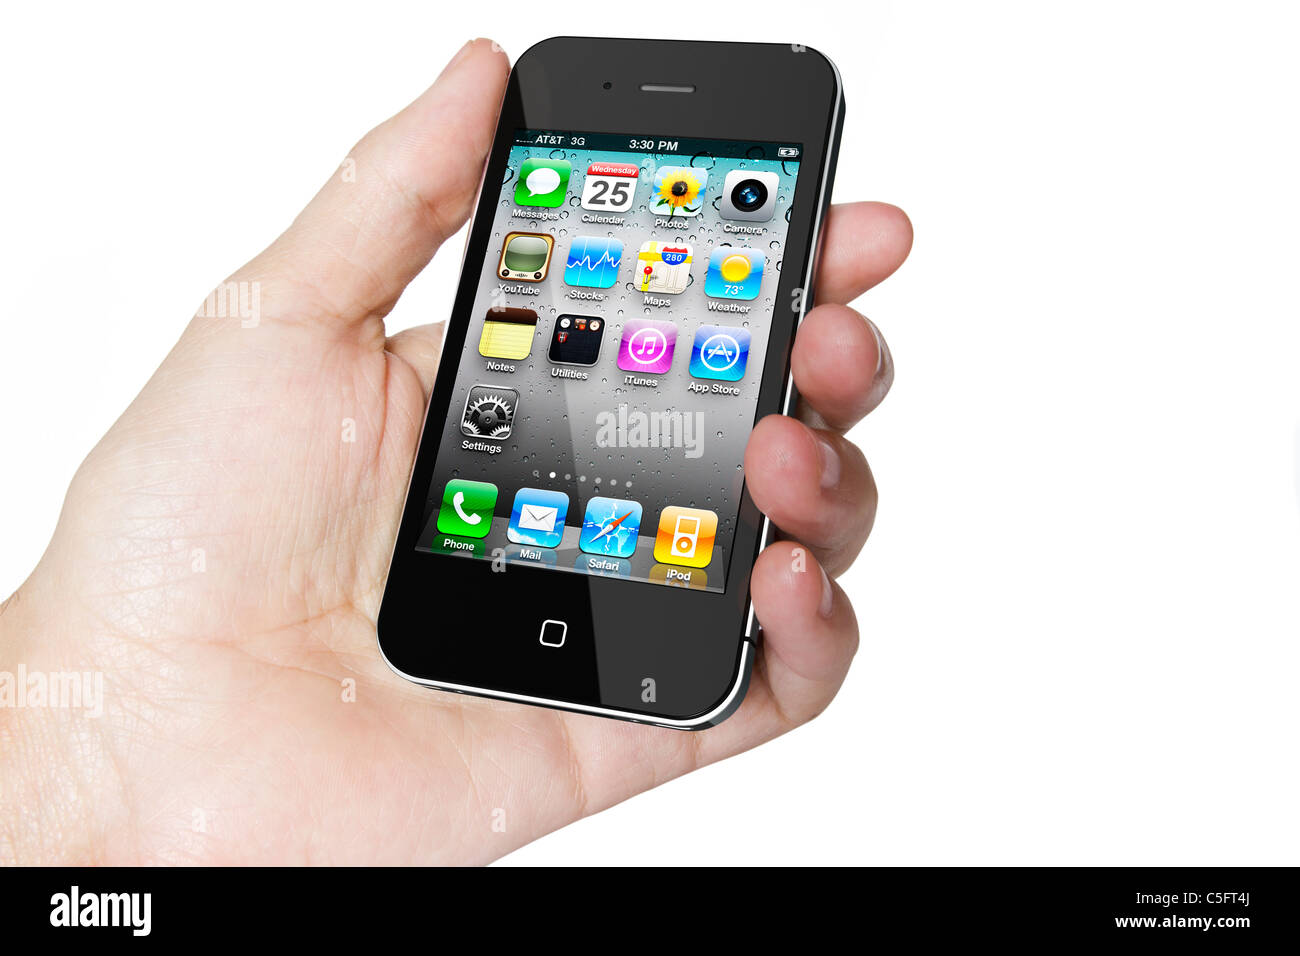 Galati, Romania - 10 Luglio 2011: Apple IPHONE 4s, smart phone visualizzazione della schermata home con le applicazioni Foto Stock